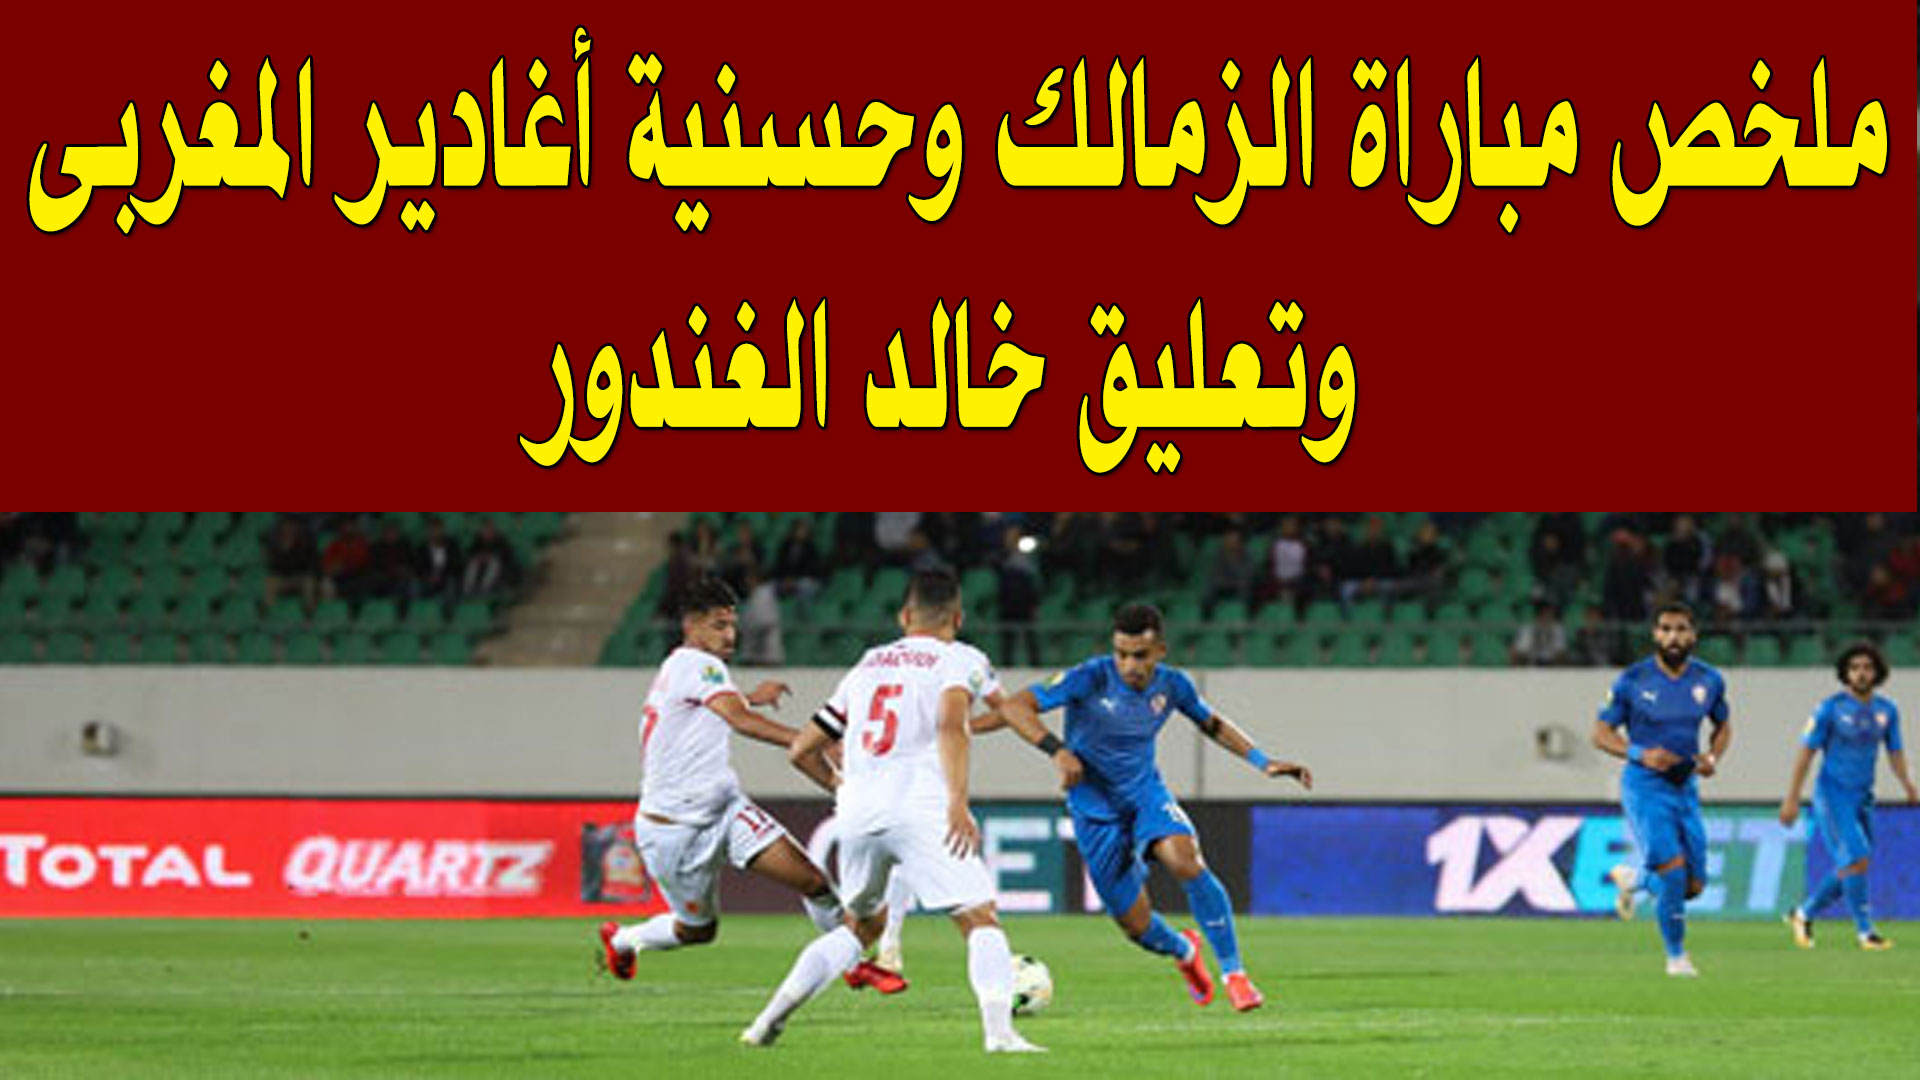  شاهد بالفيديو : ملخص مباراة الزمالك وحسنية أغادير المغربى وتعليق خالد الغندور